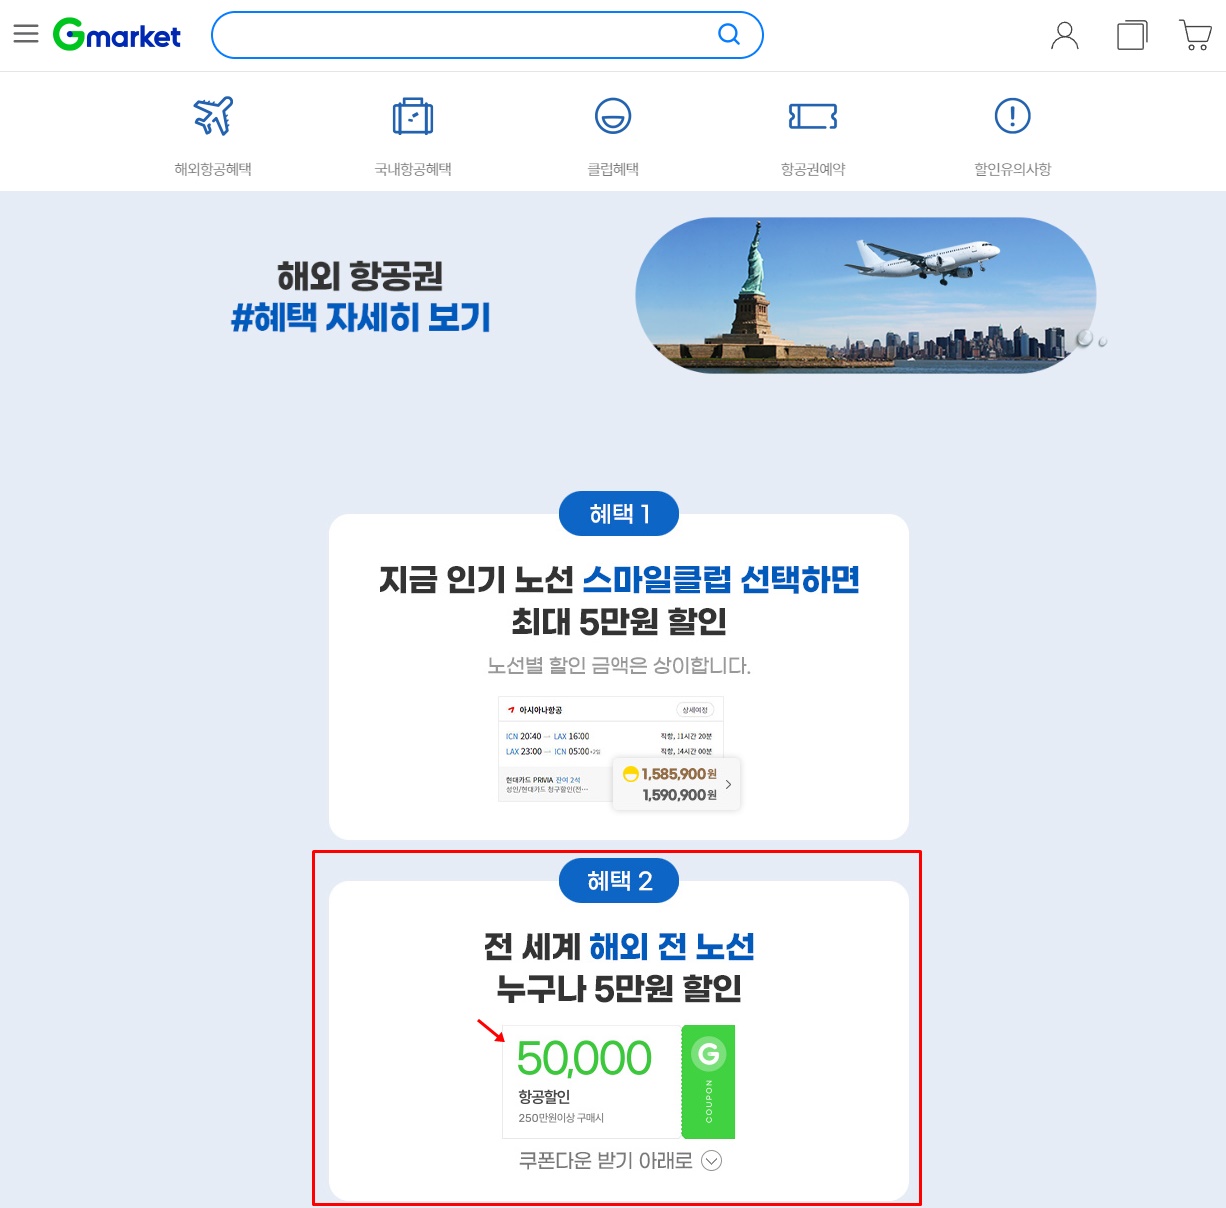 Gmarket-홈페이지-항공권-할인쿠폰-광고화면